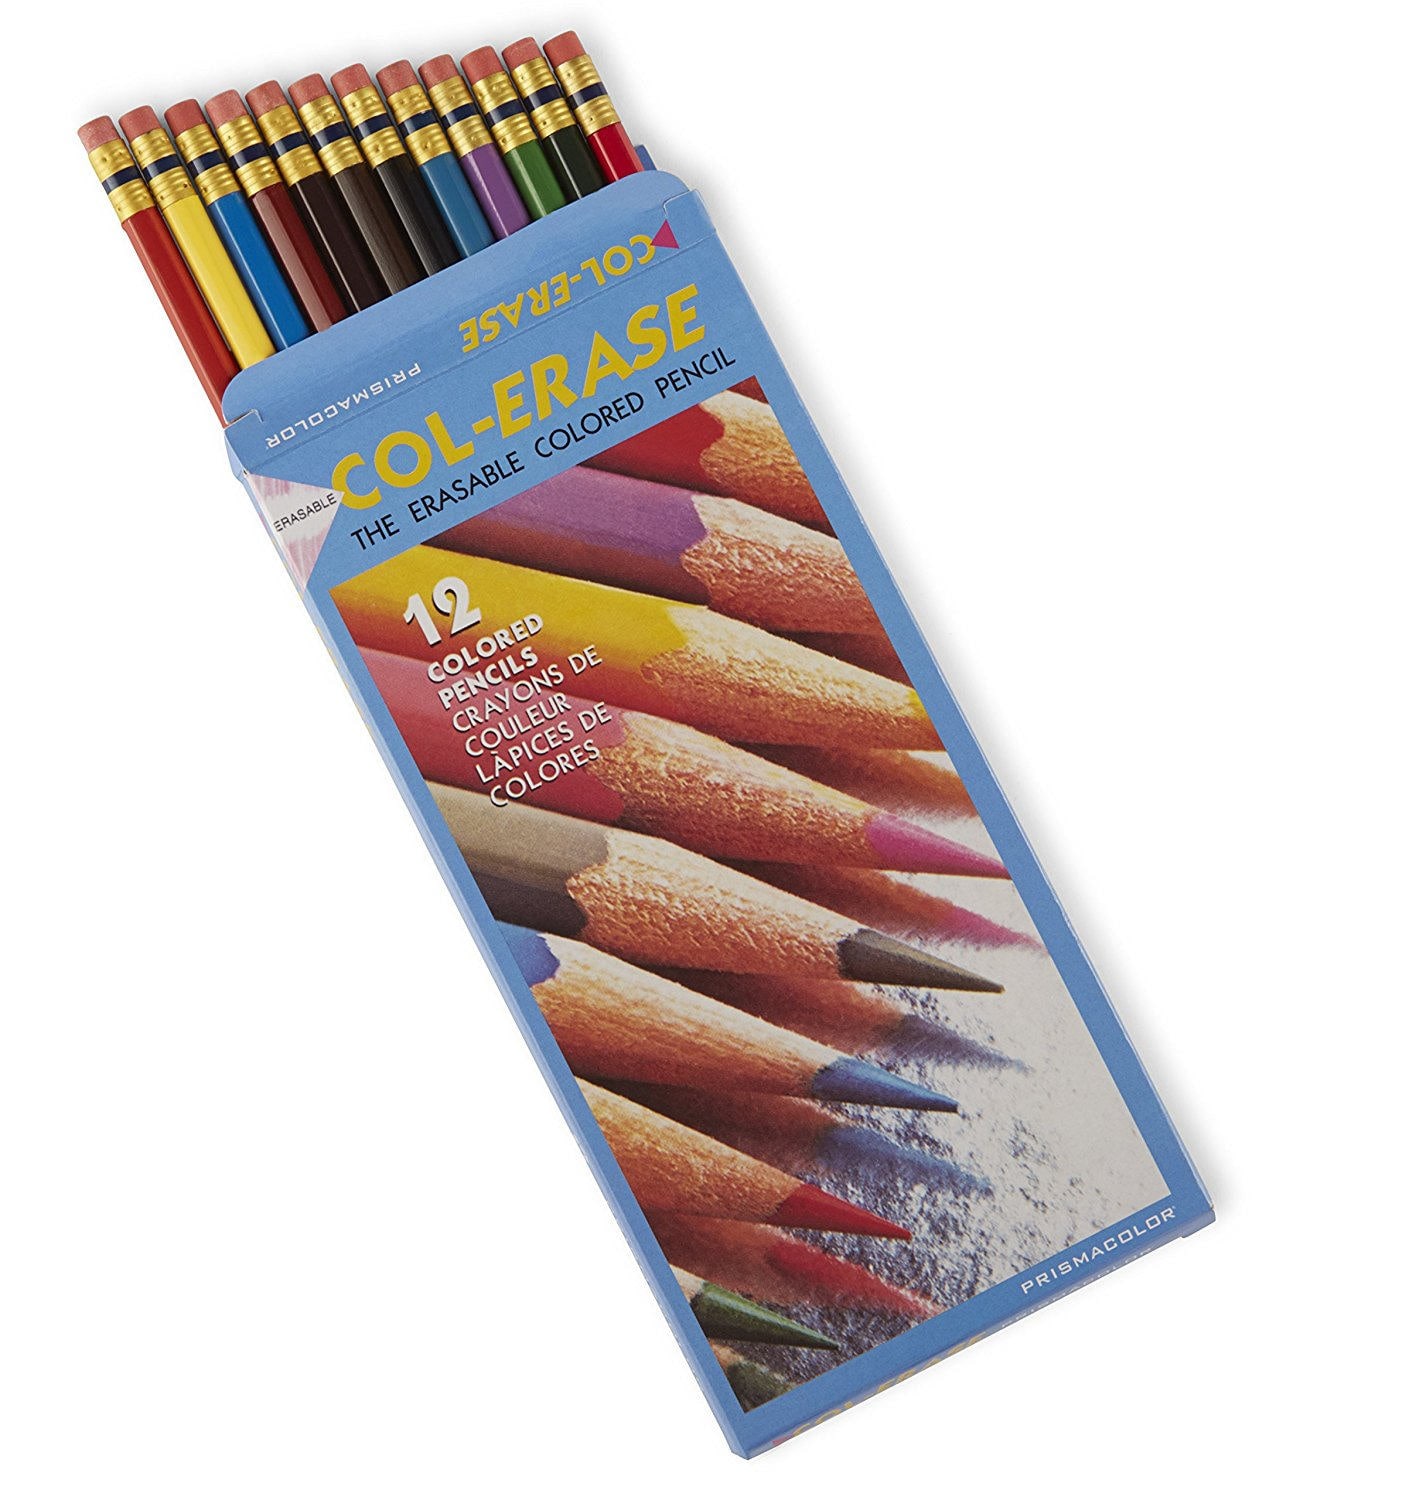 Crayola Erasable Colored Pencils 36pc (case of 12)